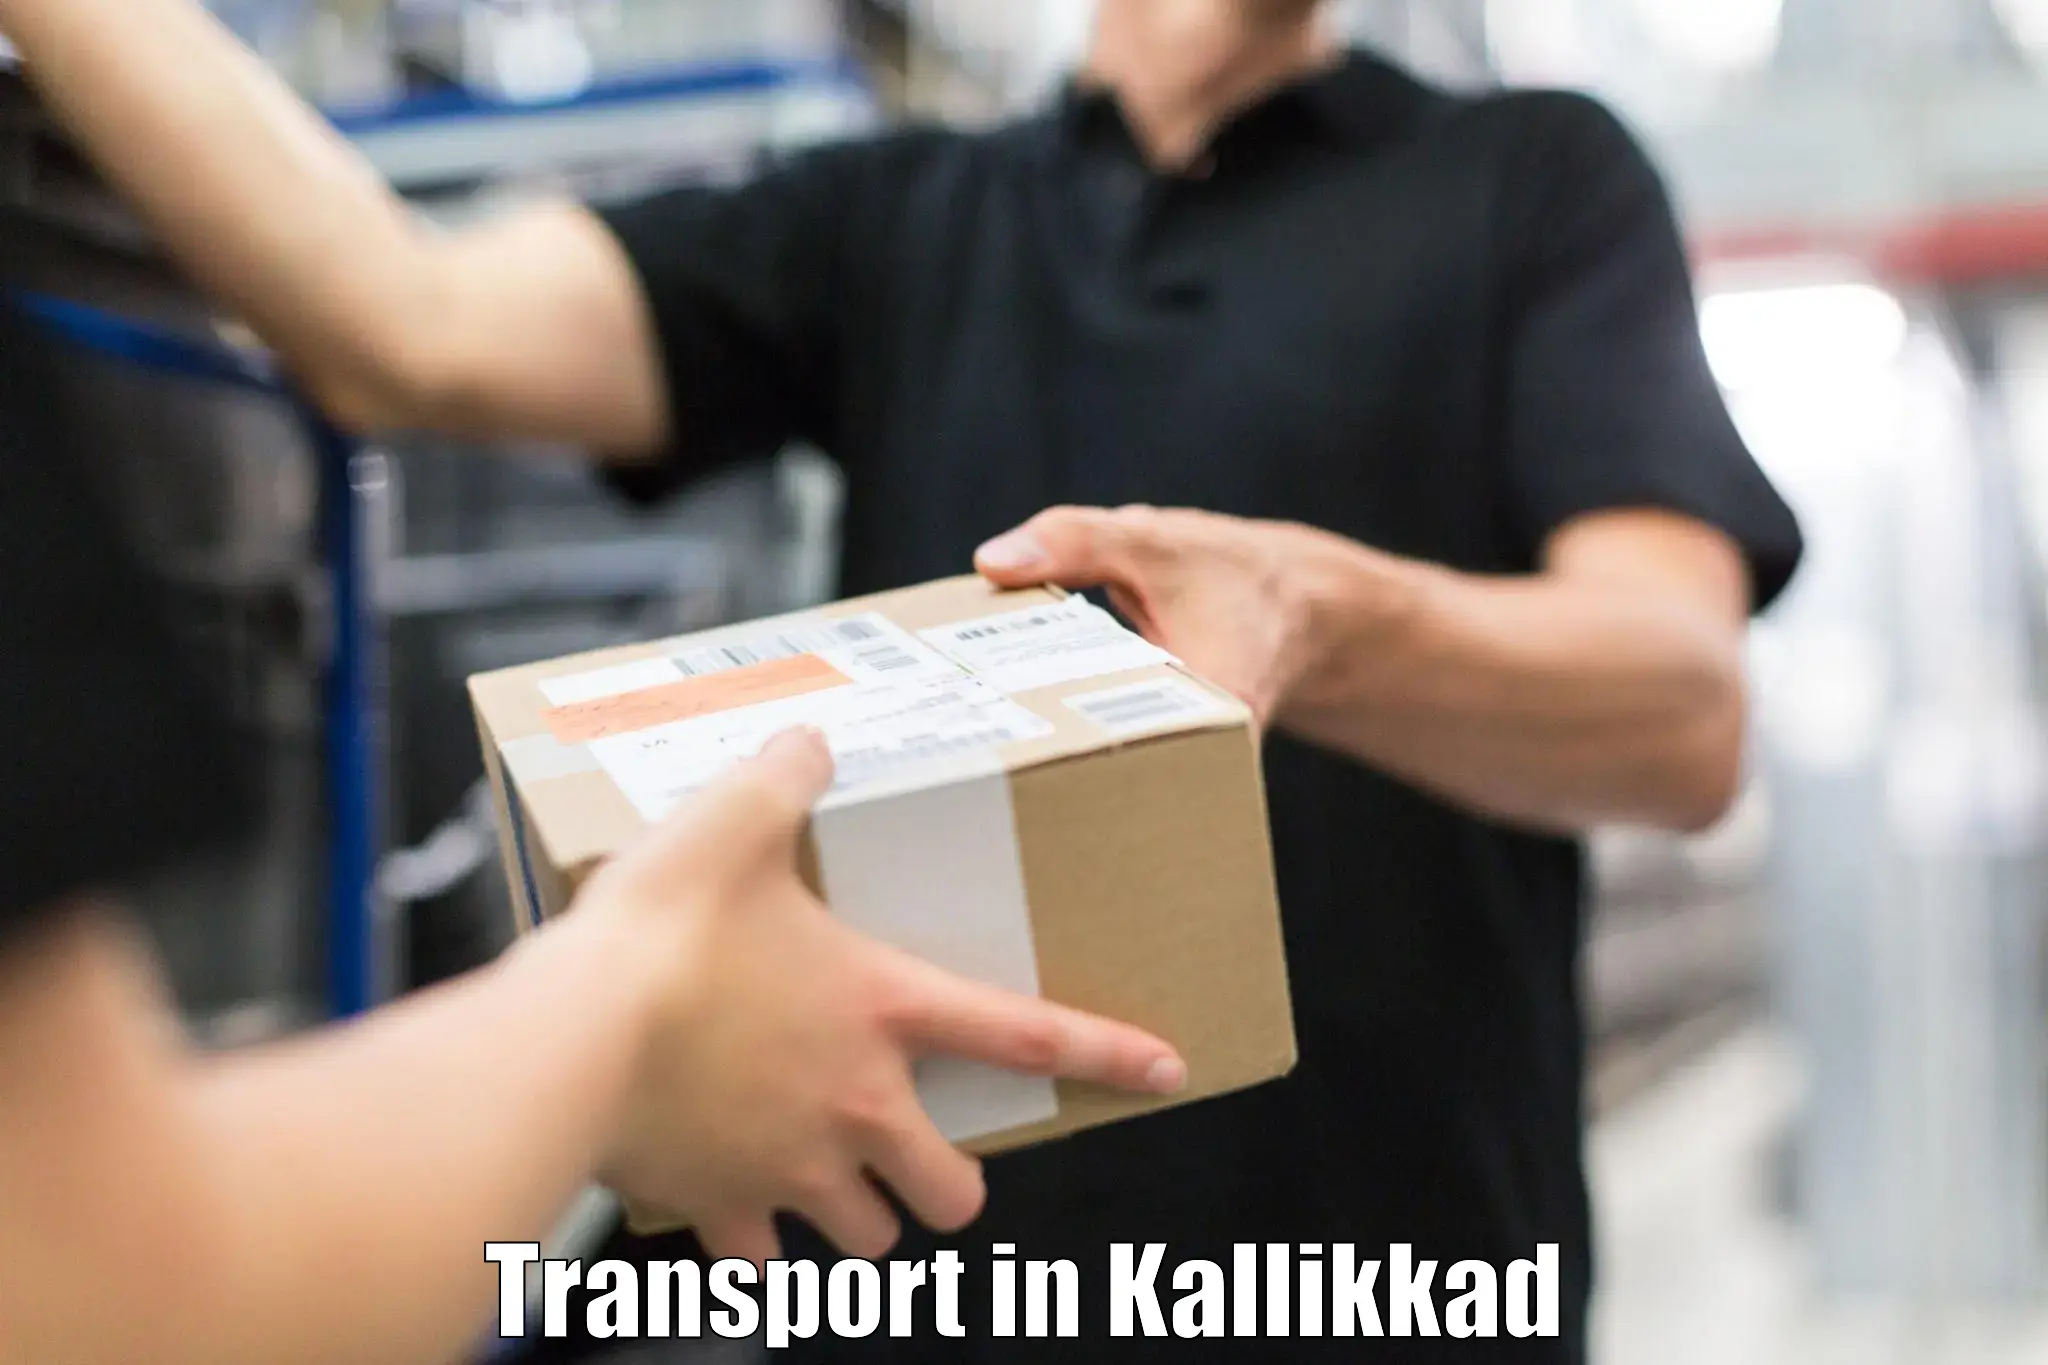 Goods transport services in Kallikkad